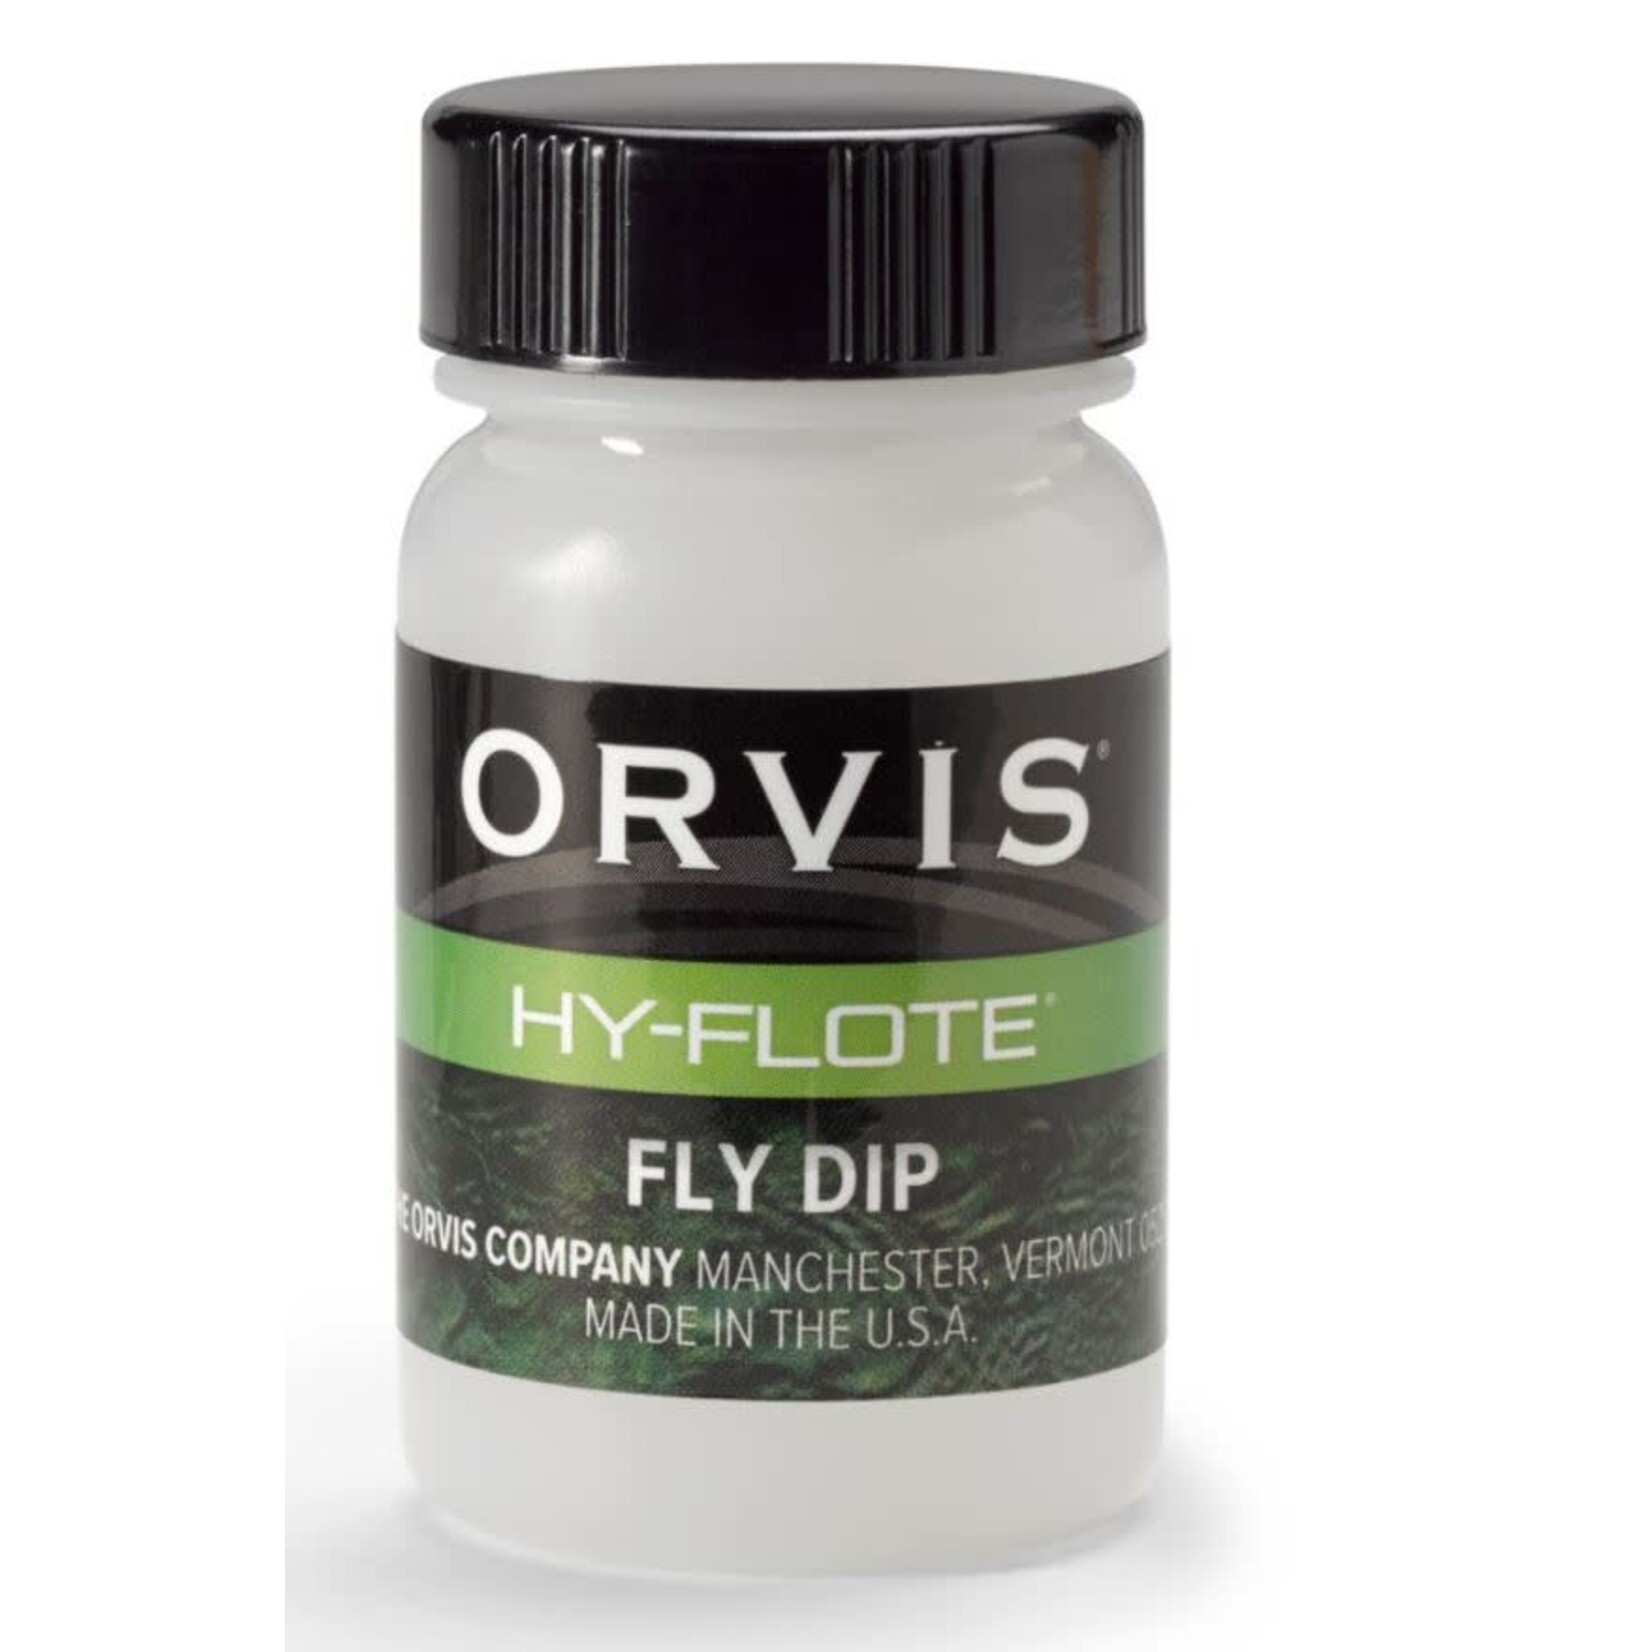 ORVIS Orvis Hy-Flote Fly Dip